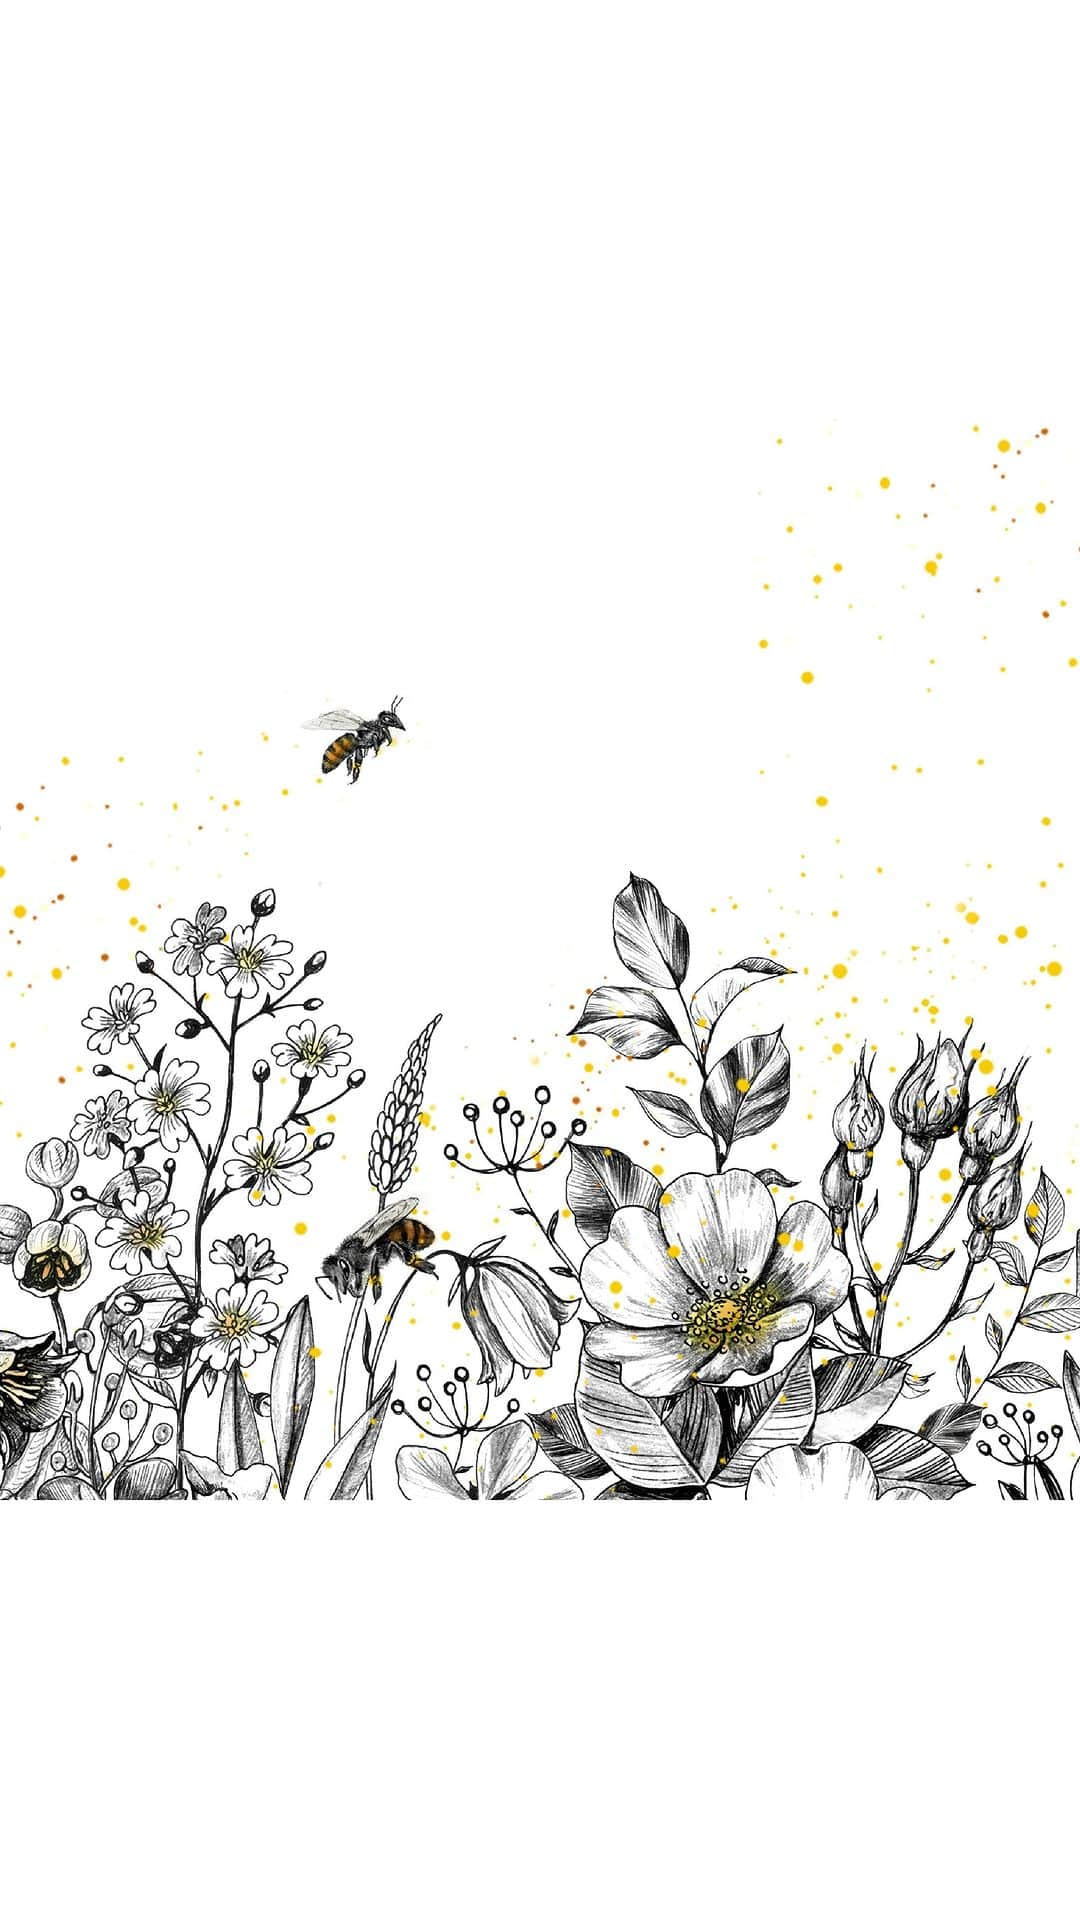 미샤 MISSHAのインスタグラム：「#미샤  비폴렌이란?  꿀벌이 미세한 꽃가루를 모아 만든 작은 알갱이로 단백질, 비타민, 미네랄이 풍부한 원료*에요. 비폴렌 1kg를 모으기 위해 꿀벌은 지구 한 바퀴를 비행한답니다. 🐝🌍  꿀벌의 강한 생명력과 그린 프로폴리스, 로얄젤리가 만나 비로소 미샤의 독자적인 성분 슈퍼 비폴렌이 탄생합니다.  #미샤비폴렌 이 전하는 강한 보습력을 만나보세요.   *원료적 특성에 한함」